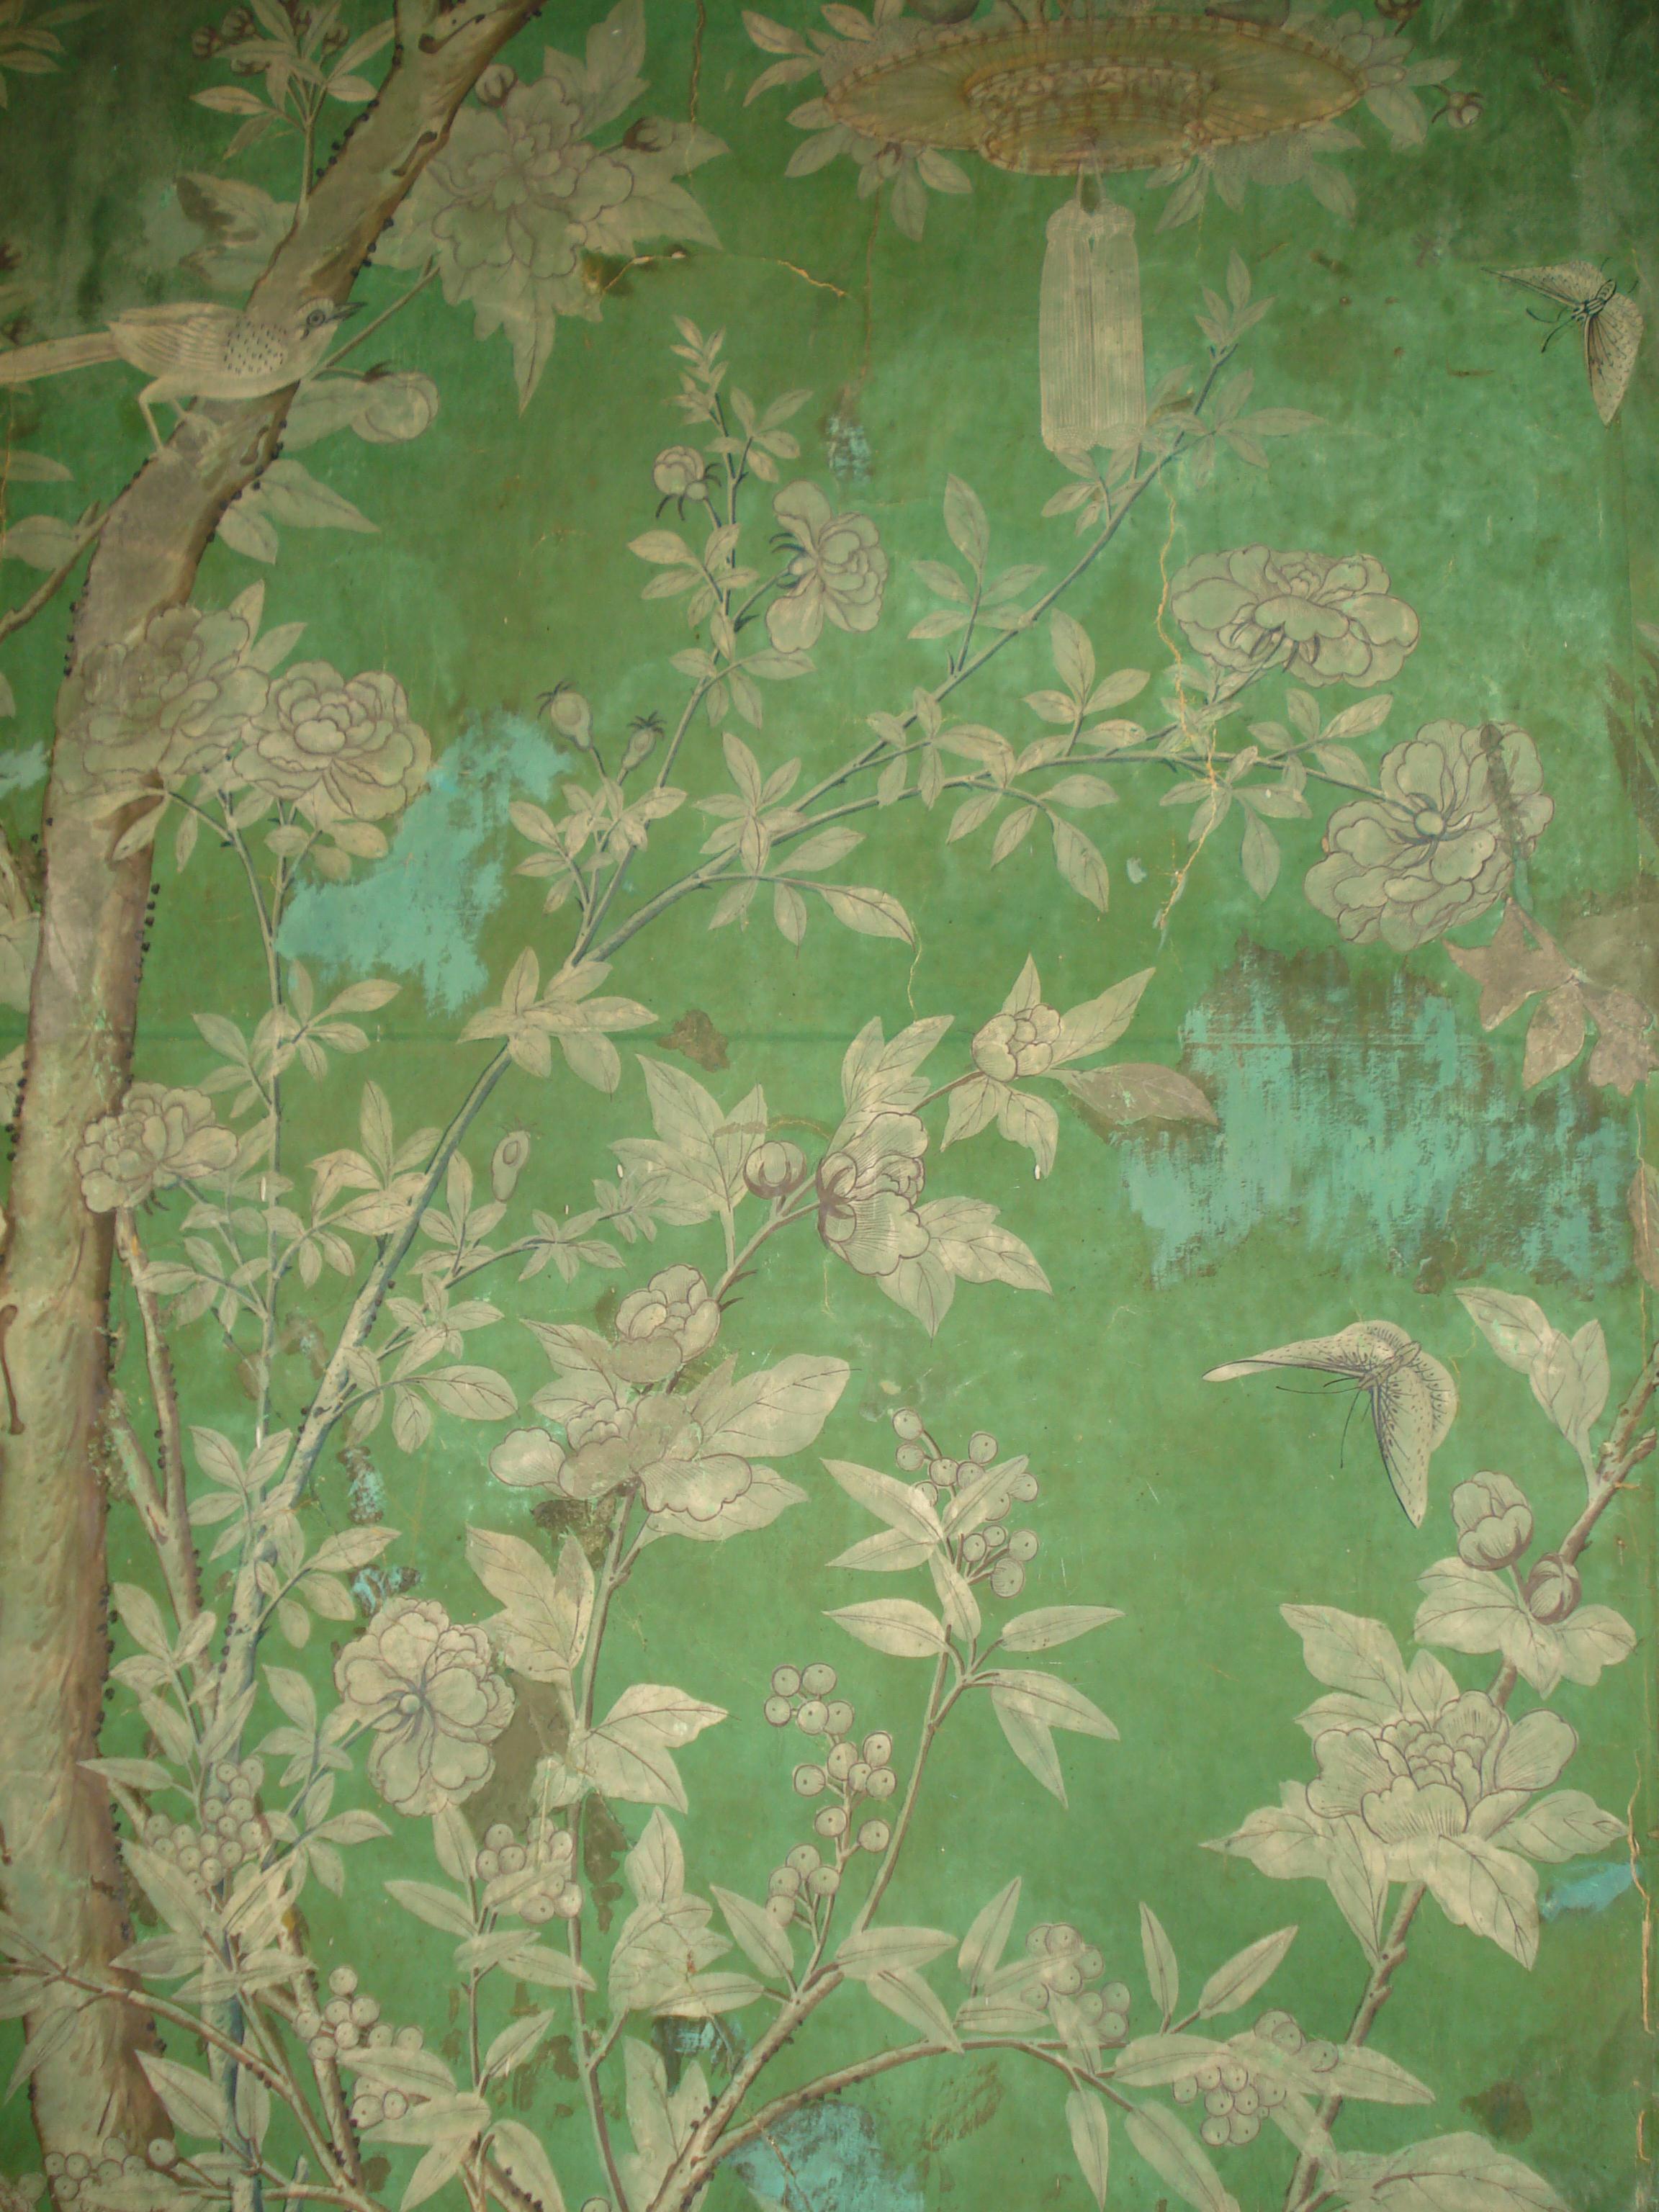 A room full of birds Eighteenth Century Wallpaper The Bentley Blog